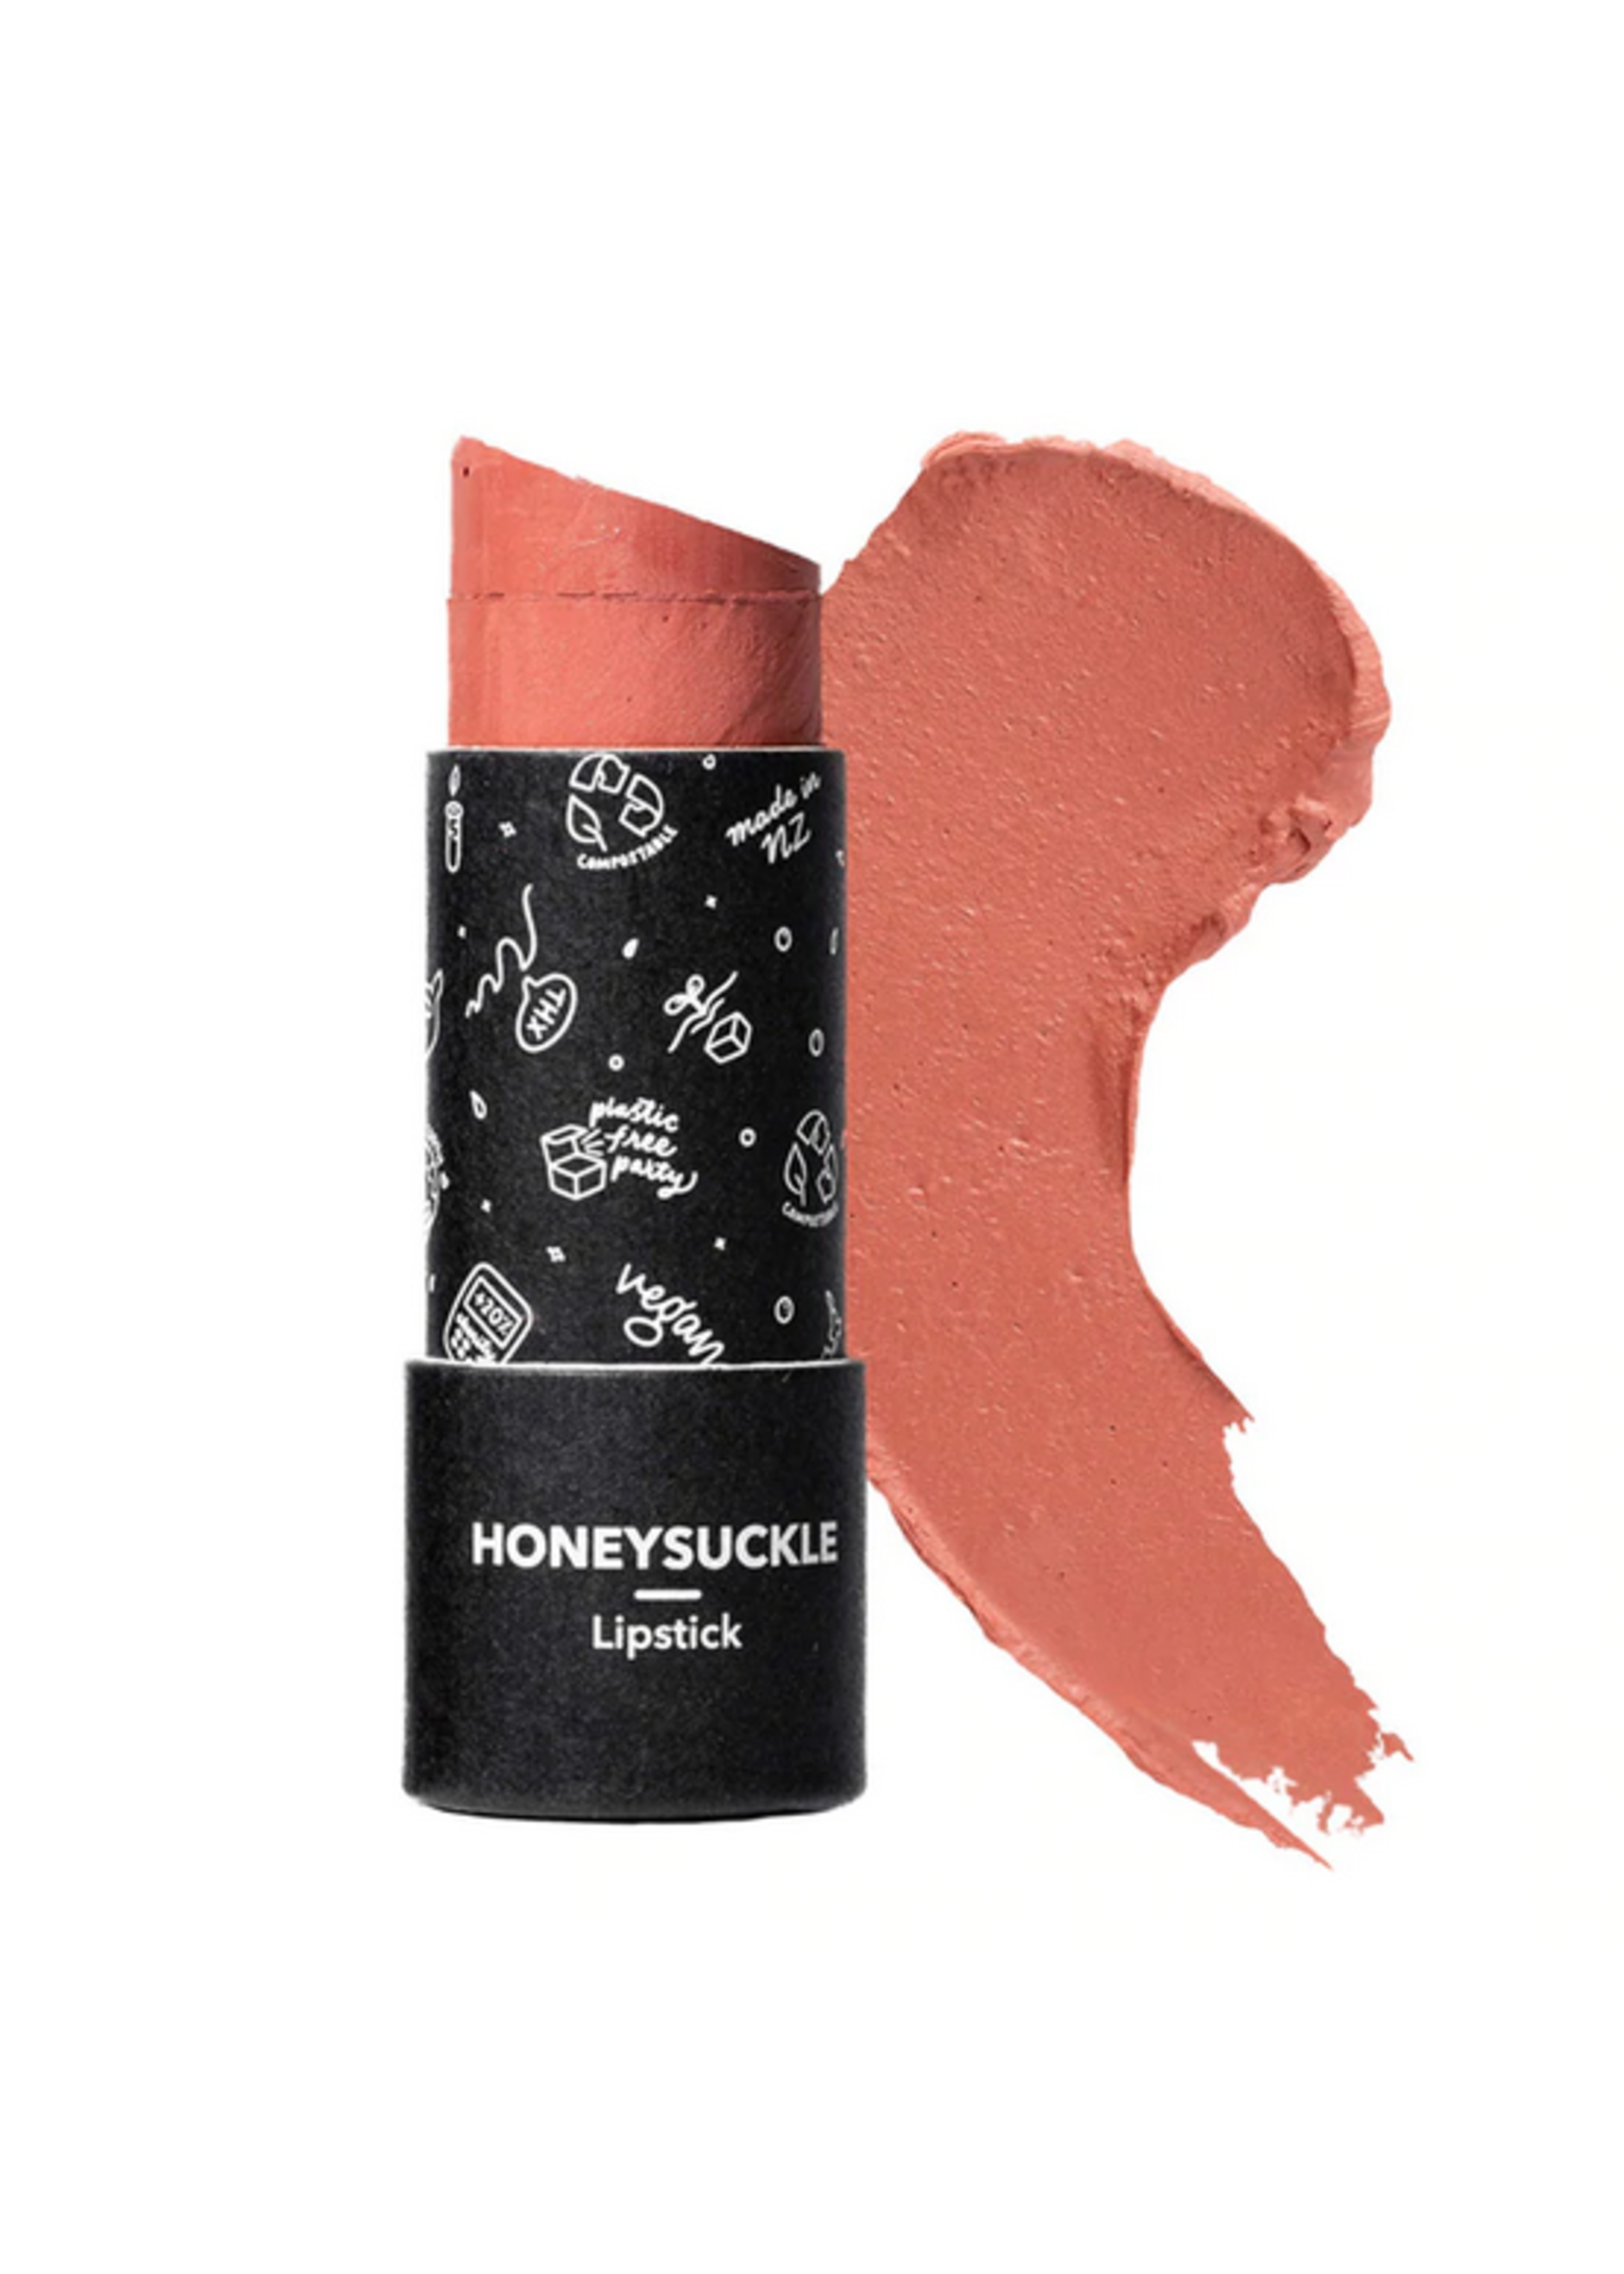 Ethique Ethique Lipstick Hondeysuckle warm peach 8g